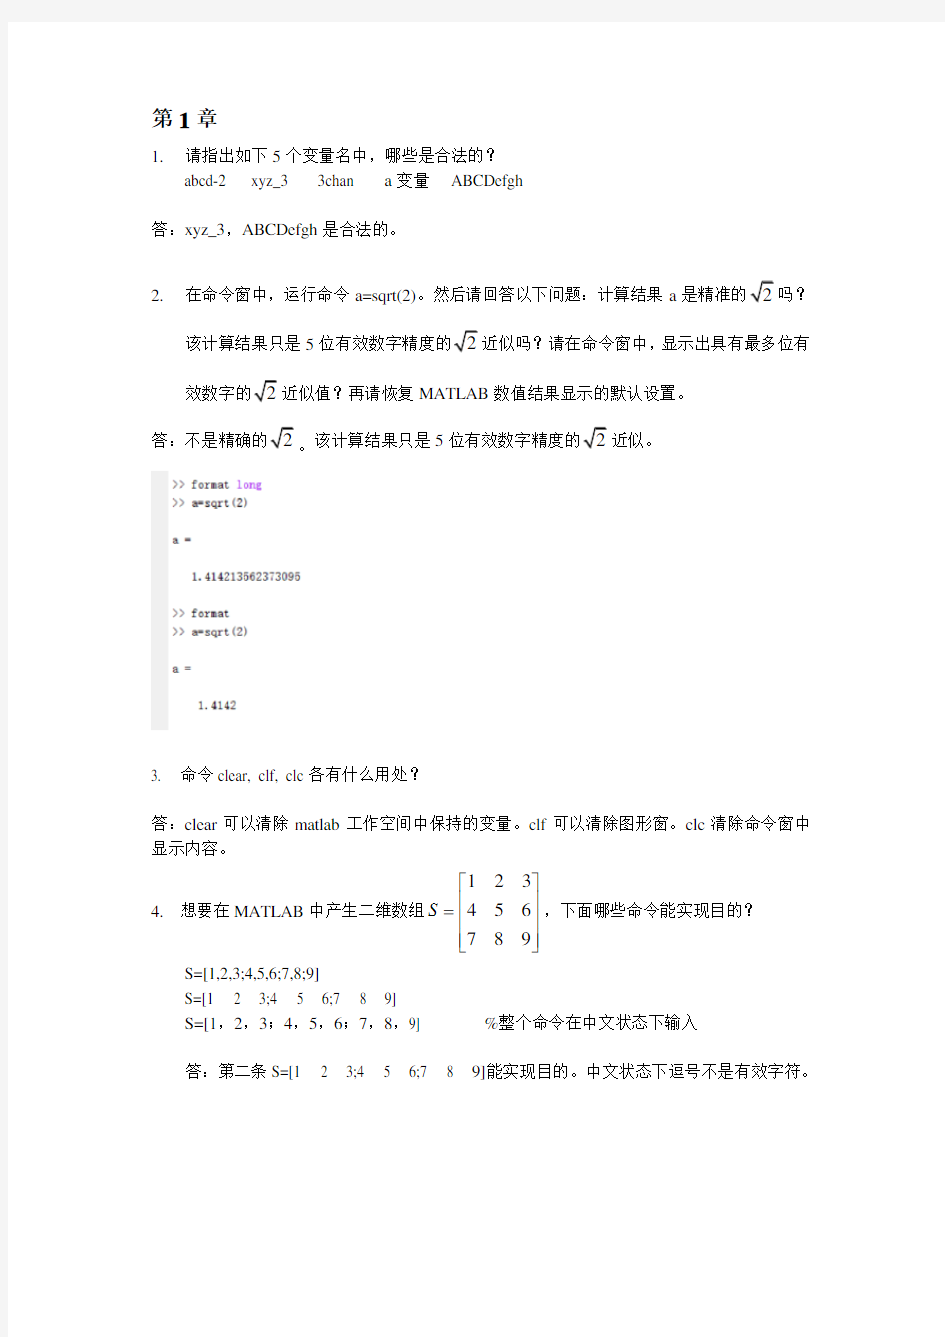 (完整版)武汉大学matlab期末课程作业